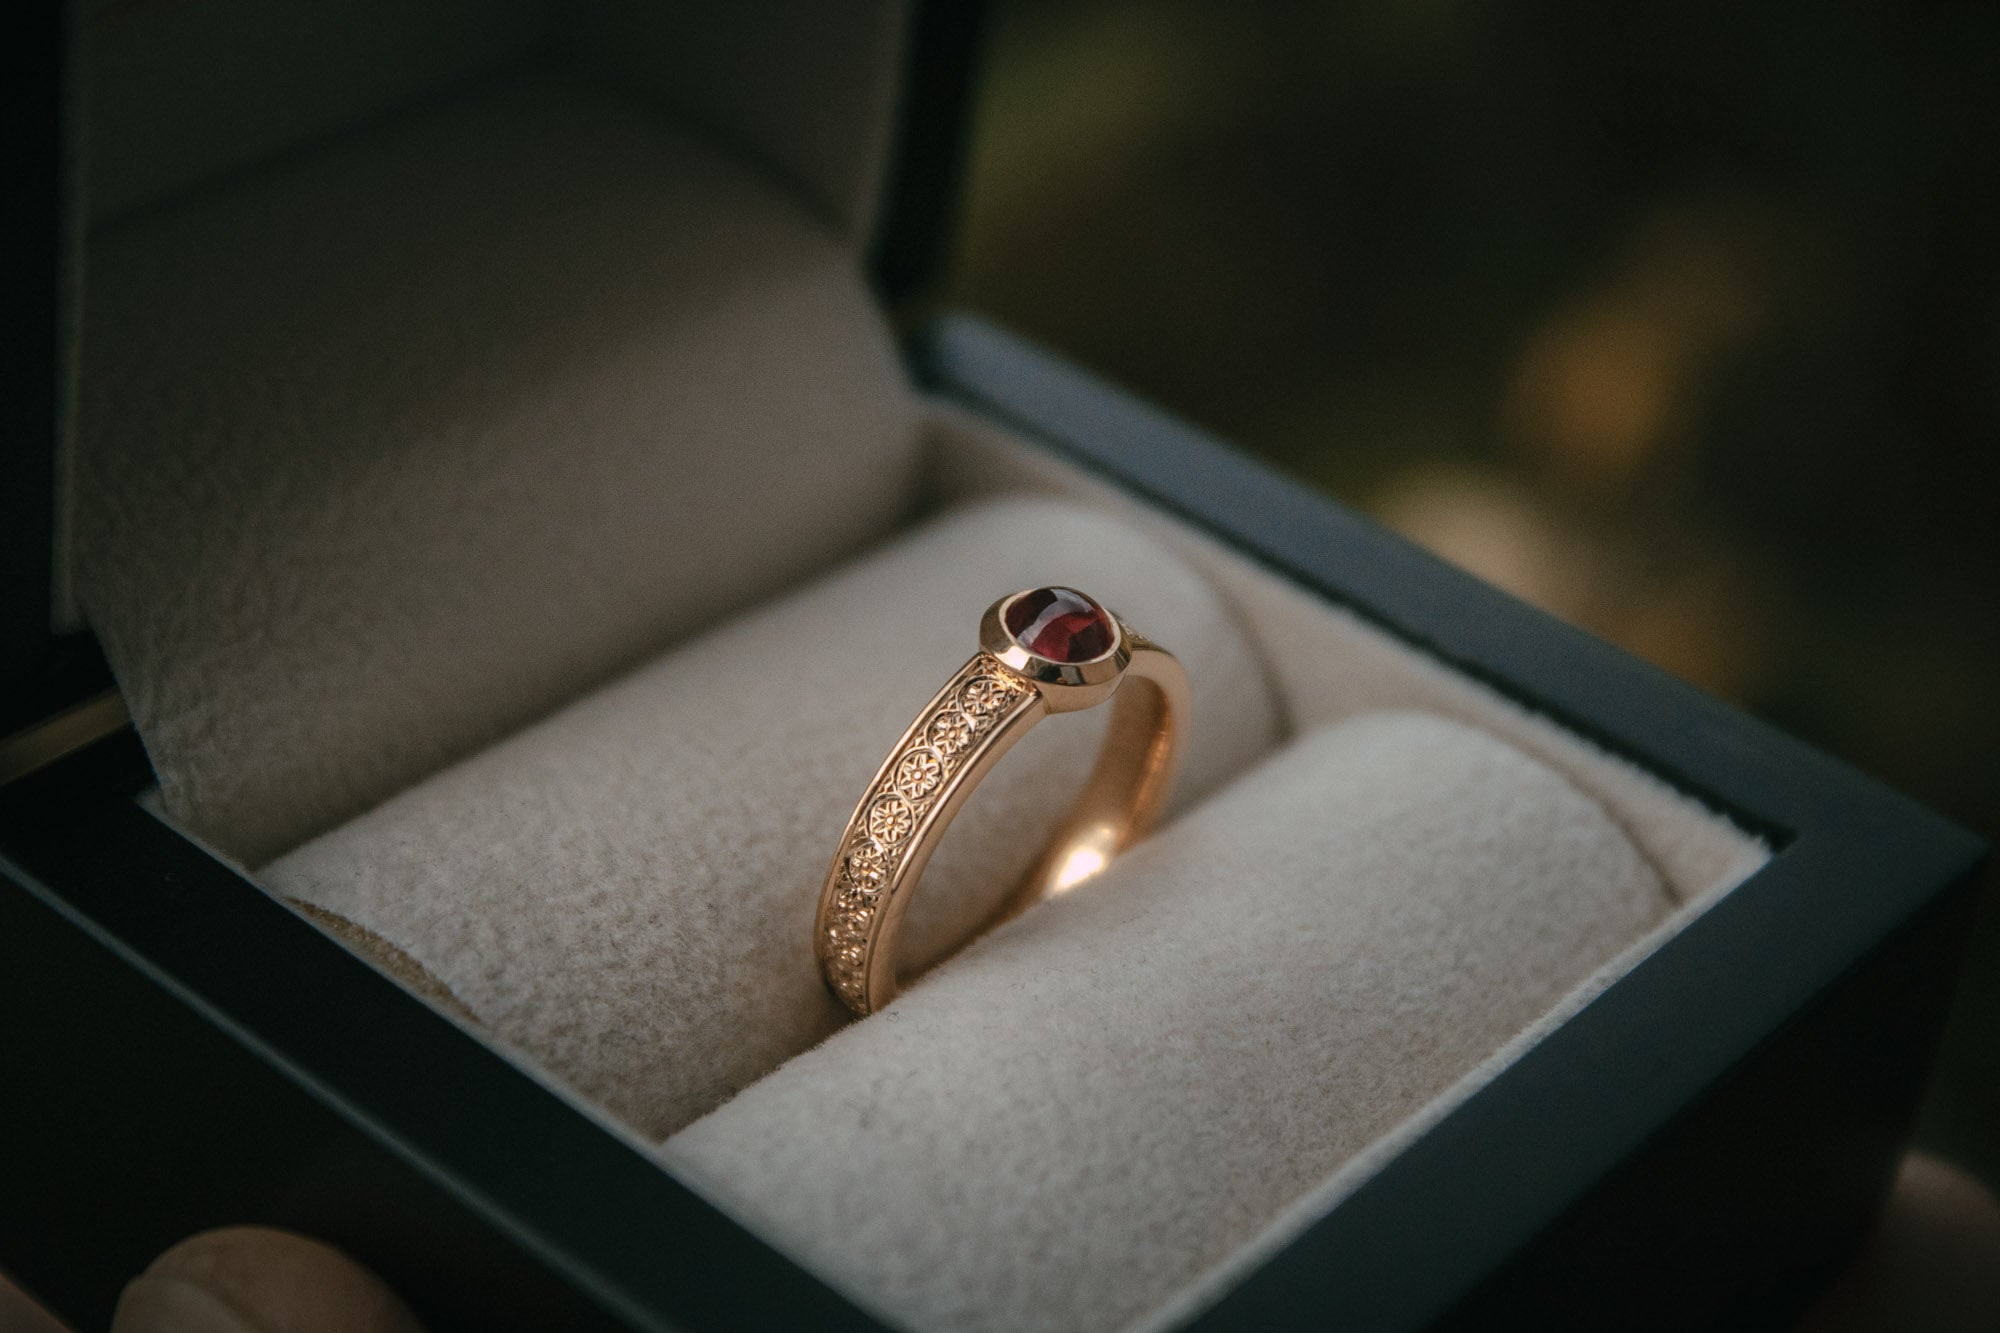 Bespoke engraved ruby ring